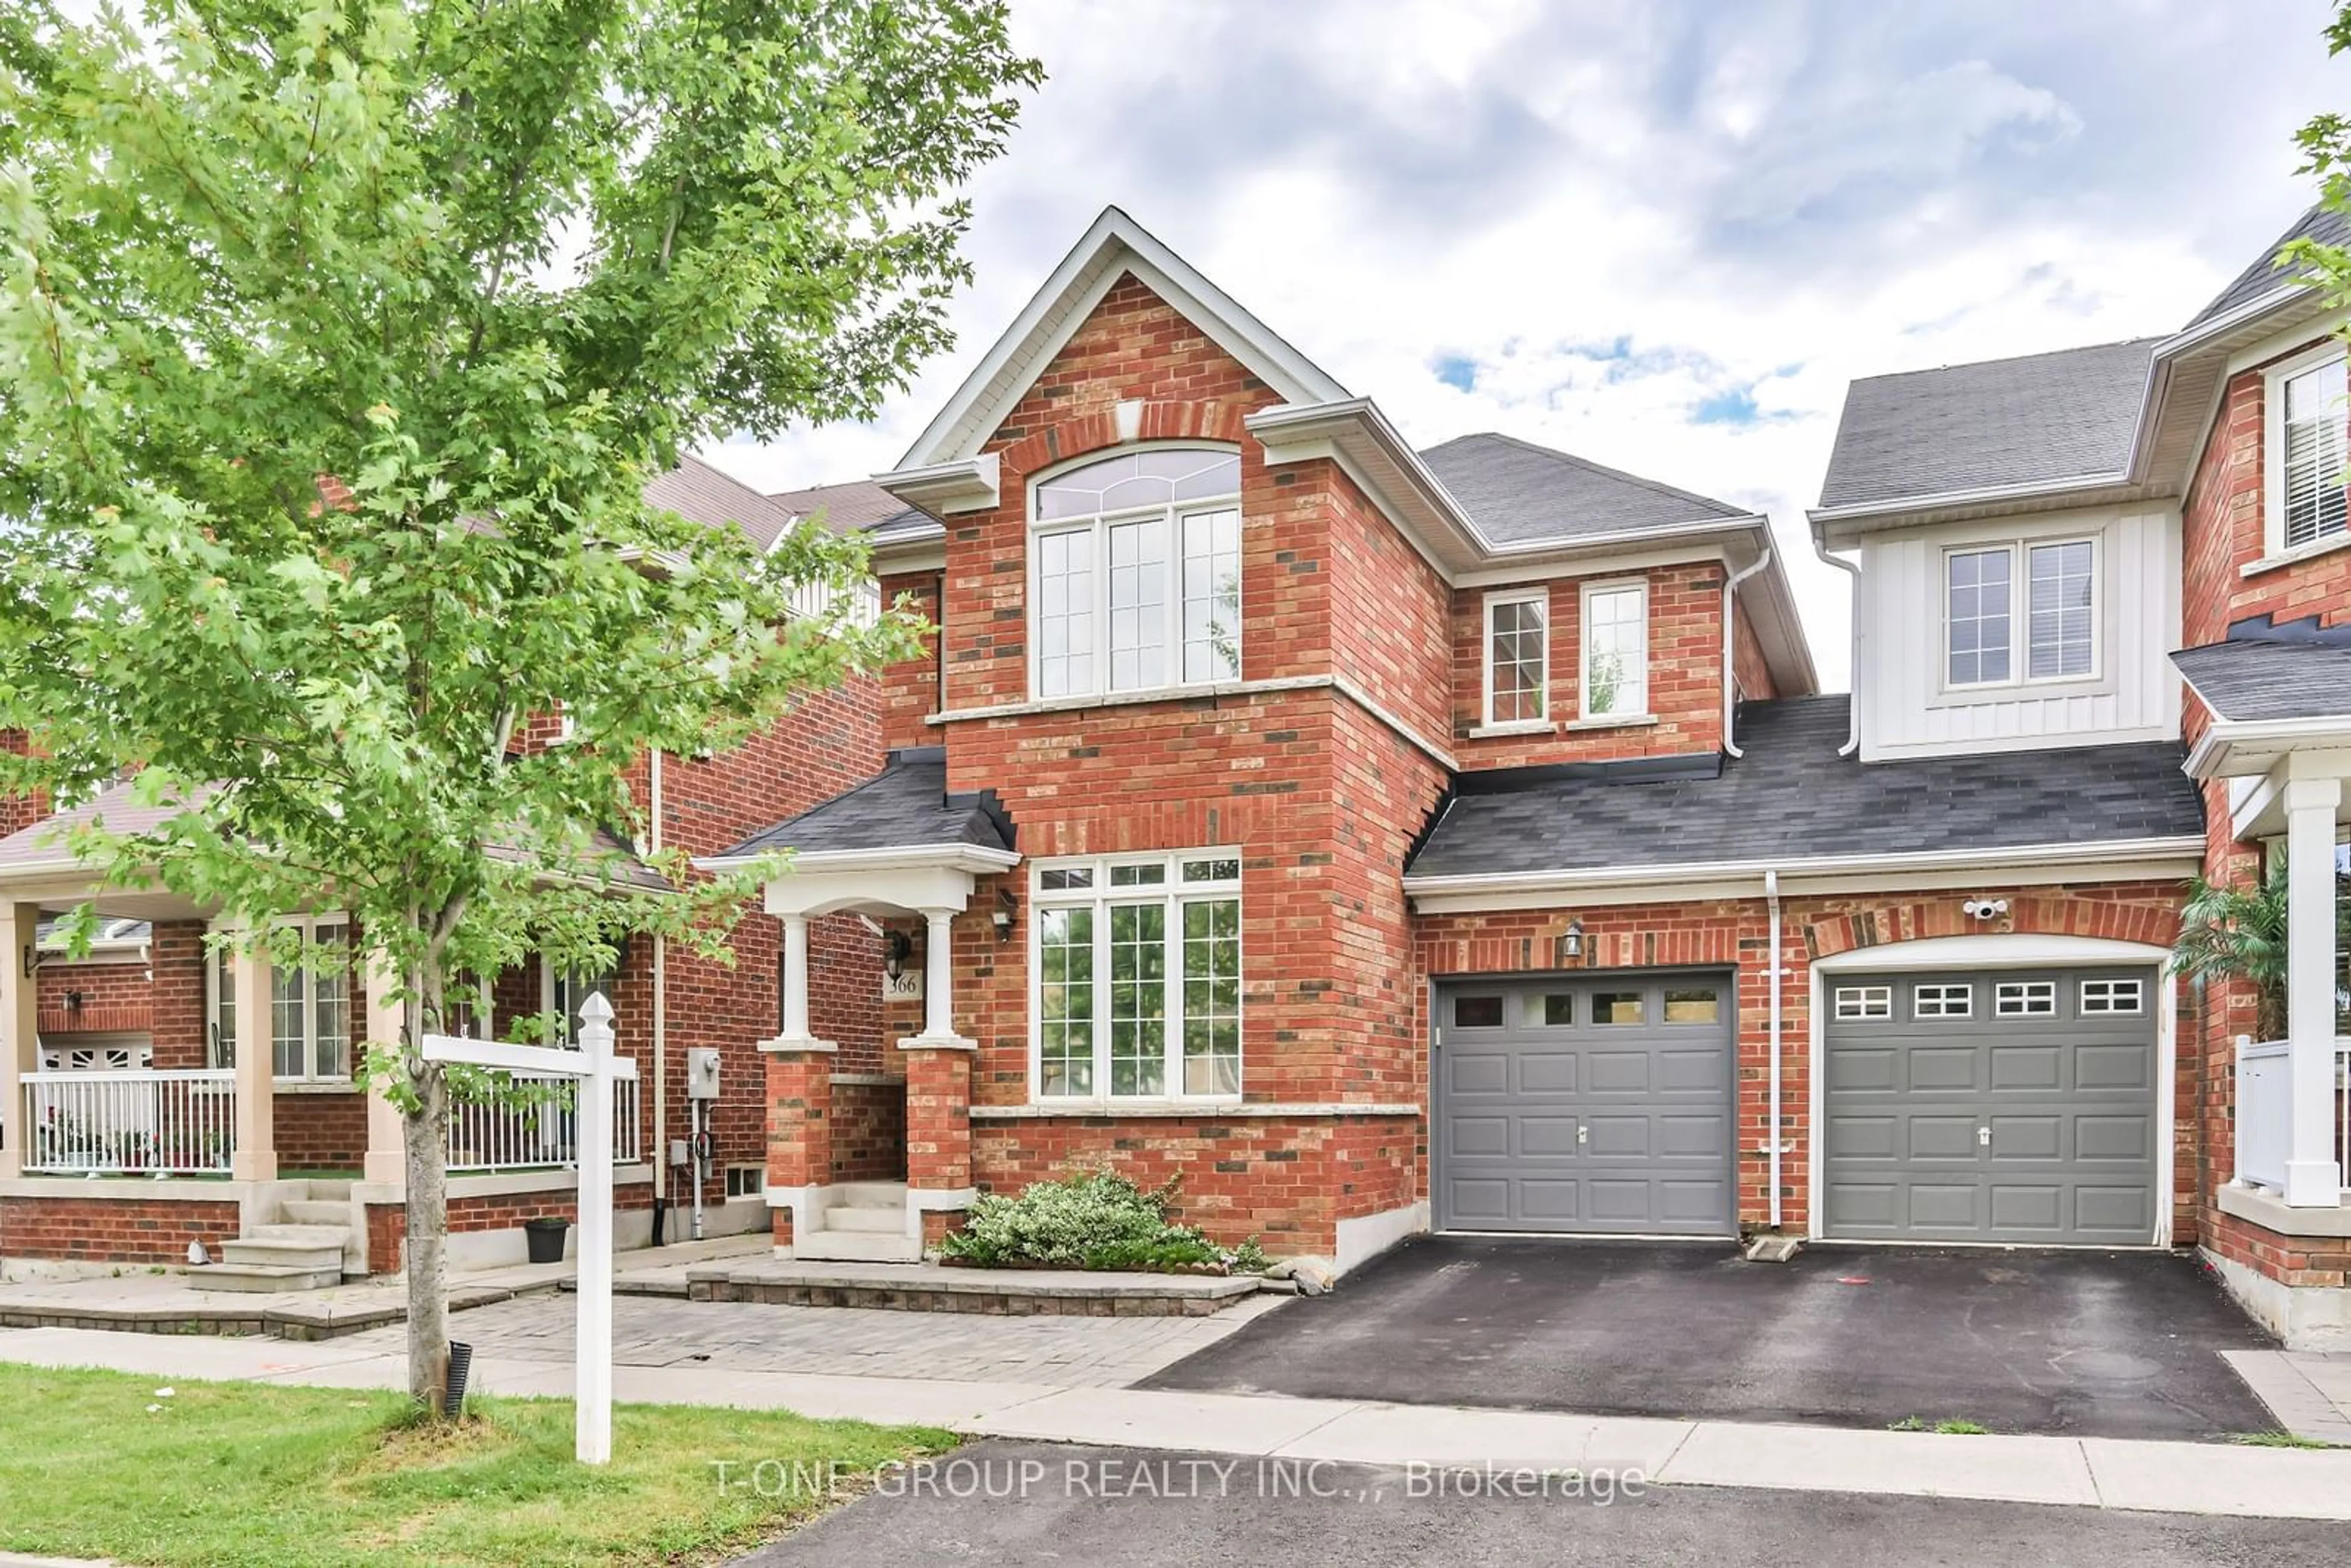 Home with brick exterior material for 366 Mingay Ave, Markham Ontario L6E 0E7